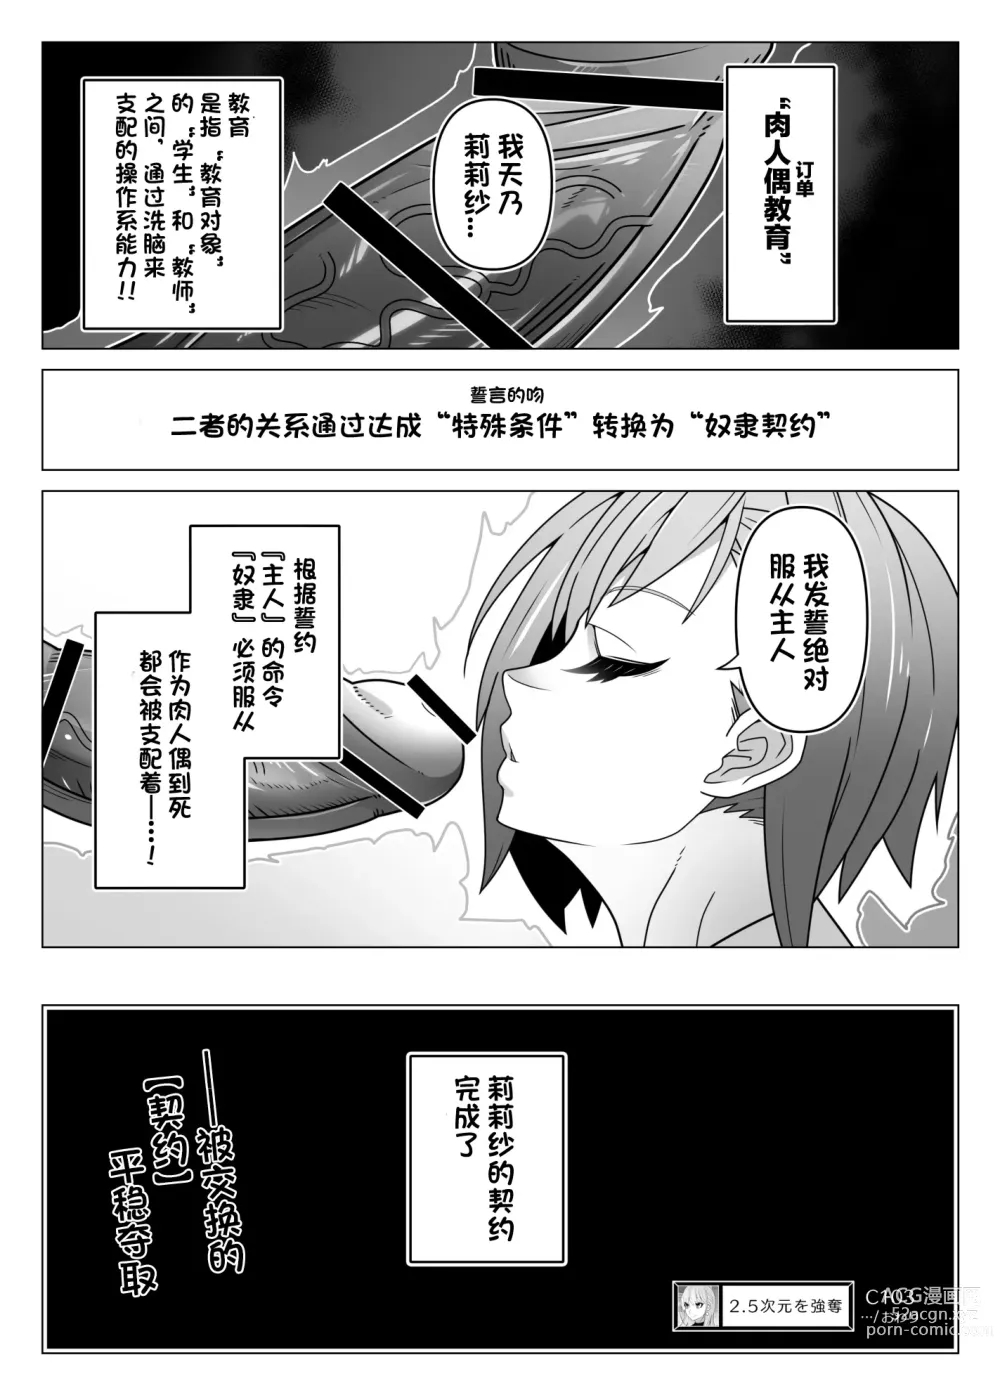 Page 22 of doujinshi 2.5 Jigen o Goudatsu